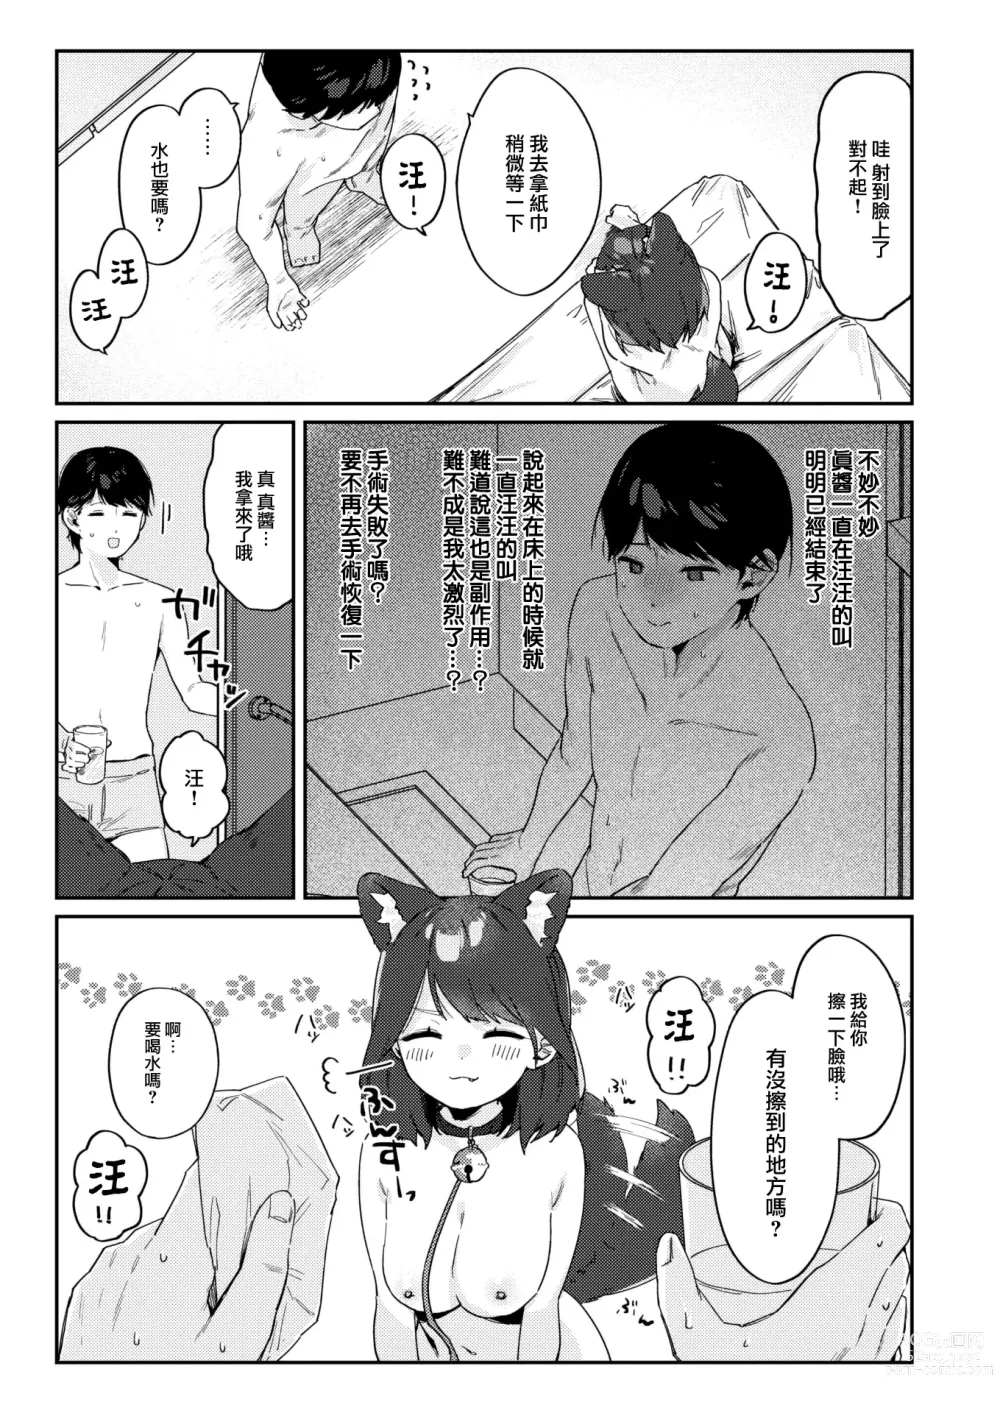 Page 22 of manga Wonderful Change